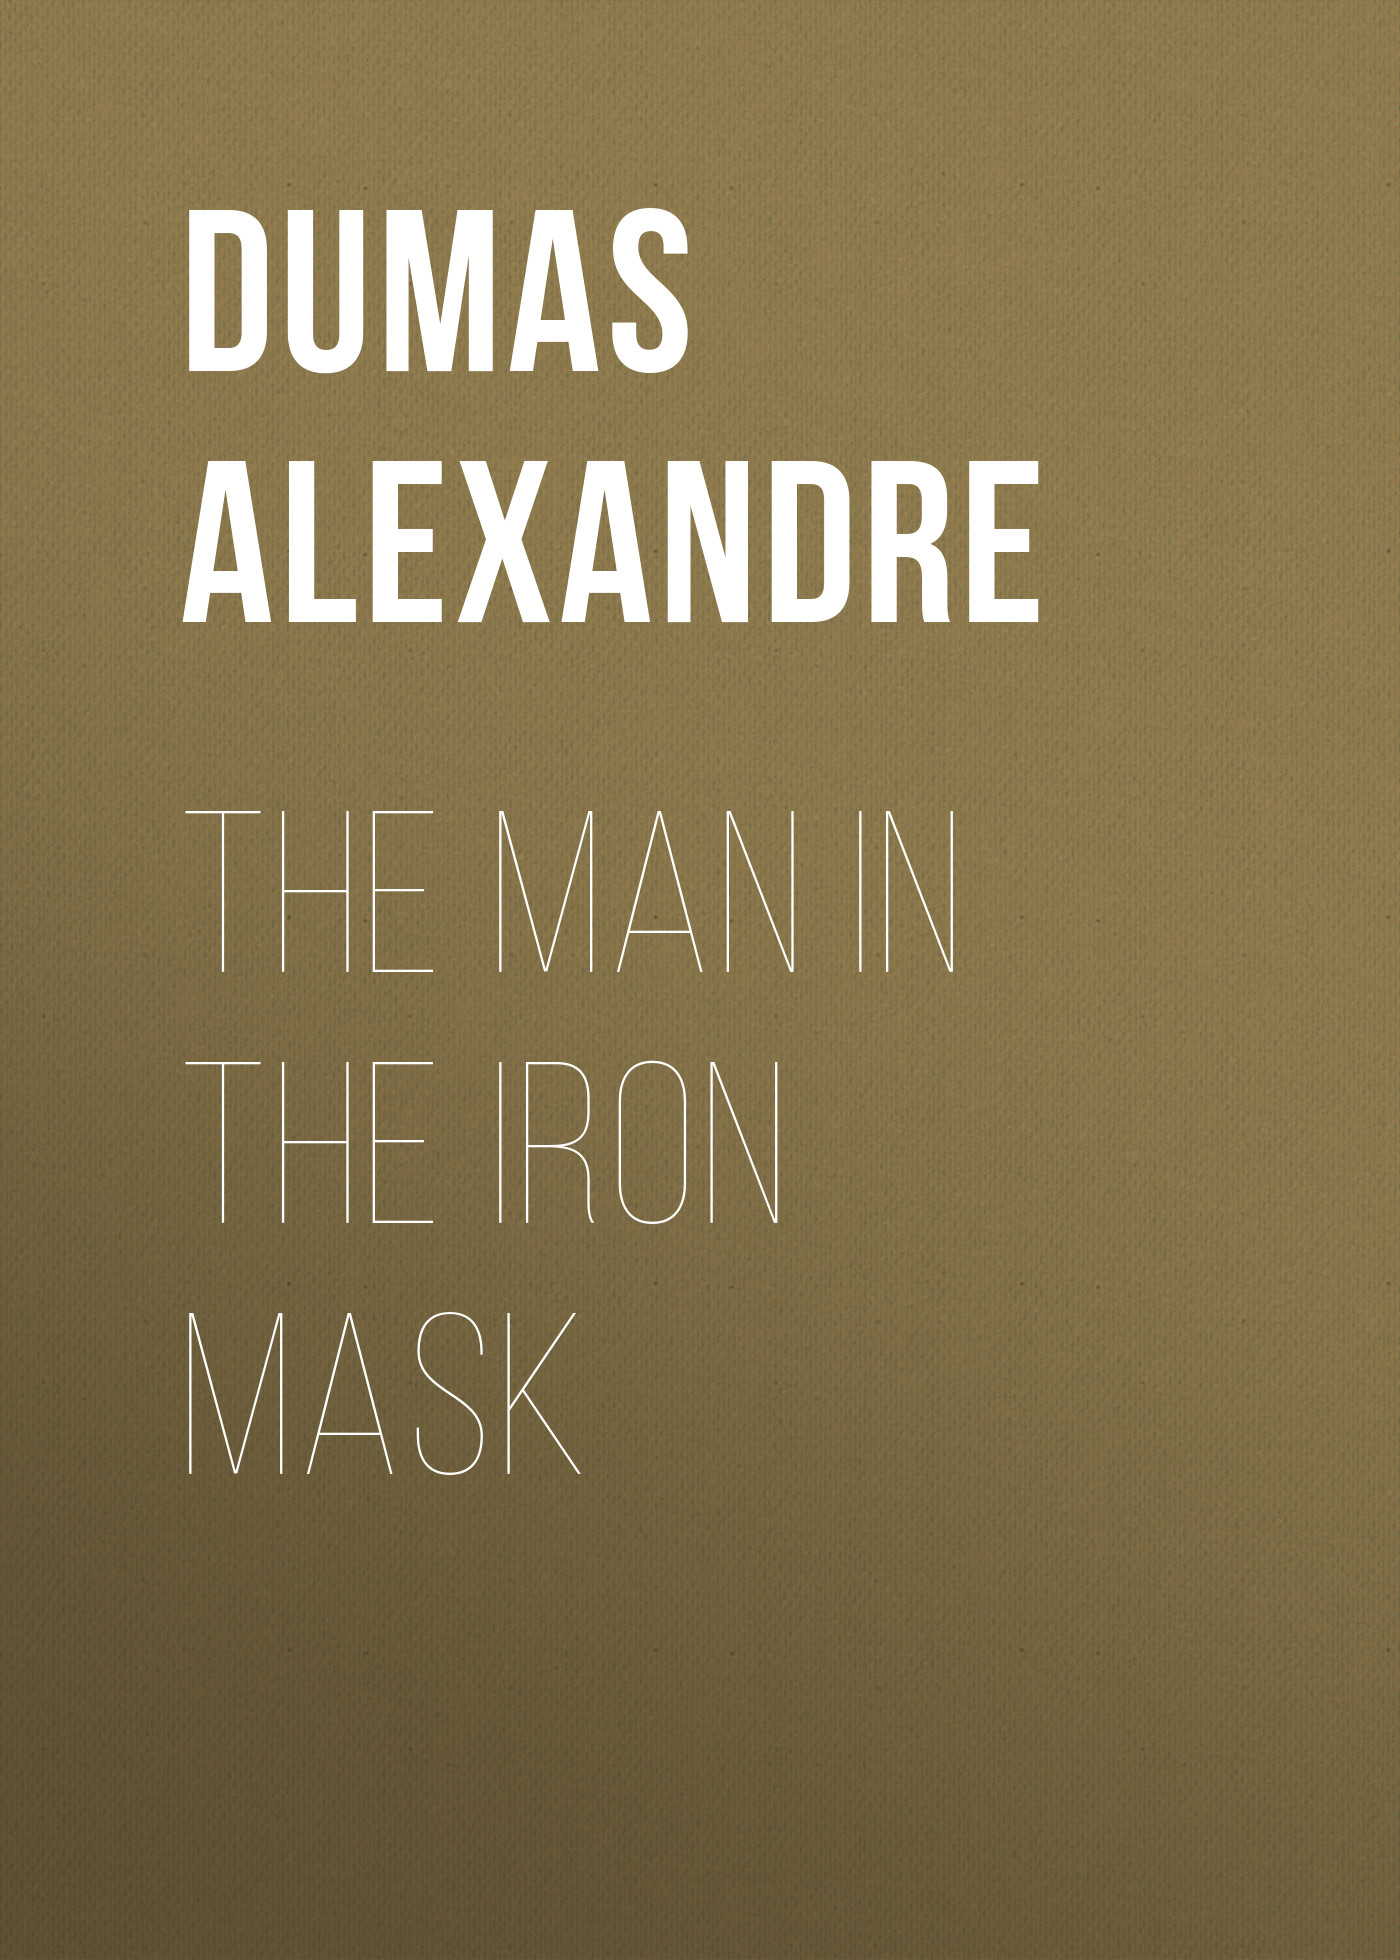 Книга The Man in the Iron Mask из серии , созданная Alexandre Dumas, может относится к жанру Литература 19 века, Зарубежная старинная литература, Зарубежная классика. Стоимость электронной книги The Man in the Iron Mask с идентификатором 25202087 составляет 0 руб.